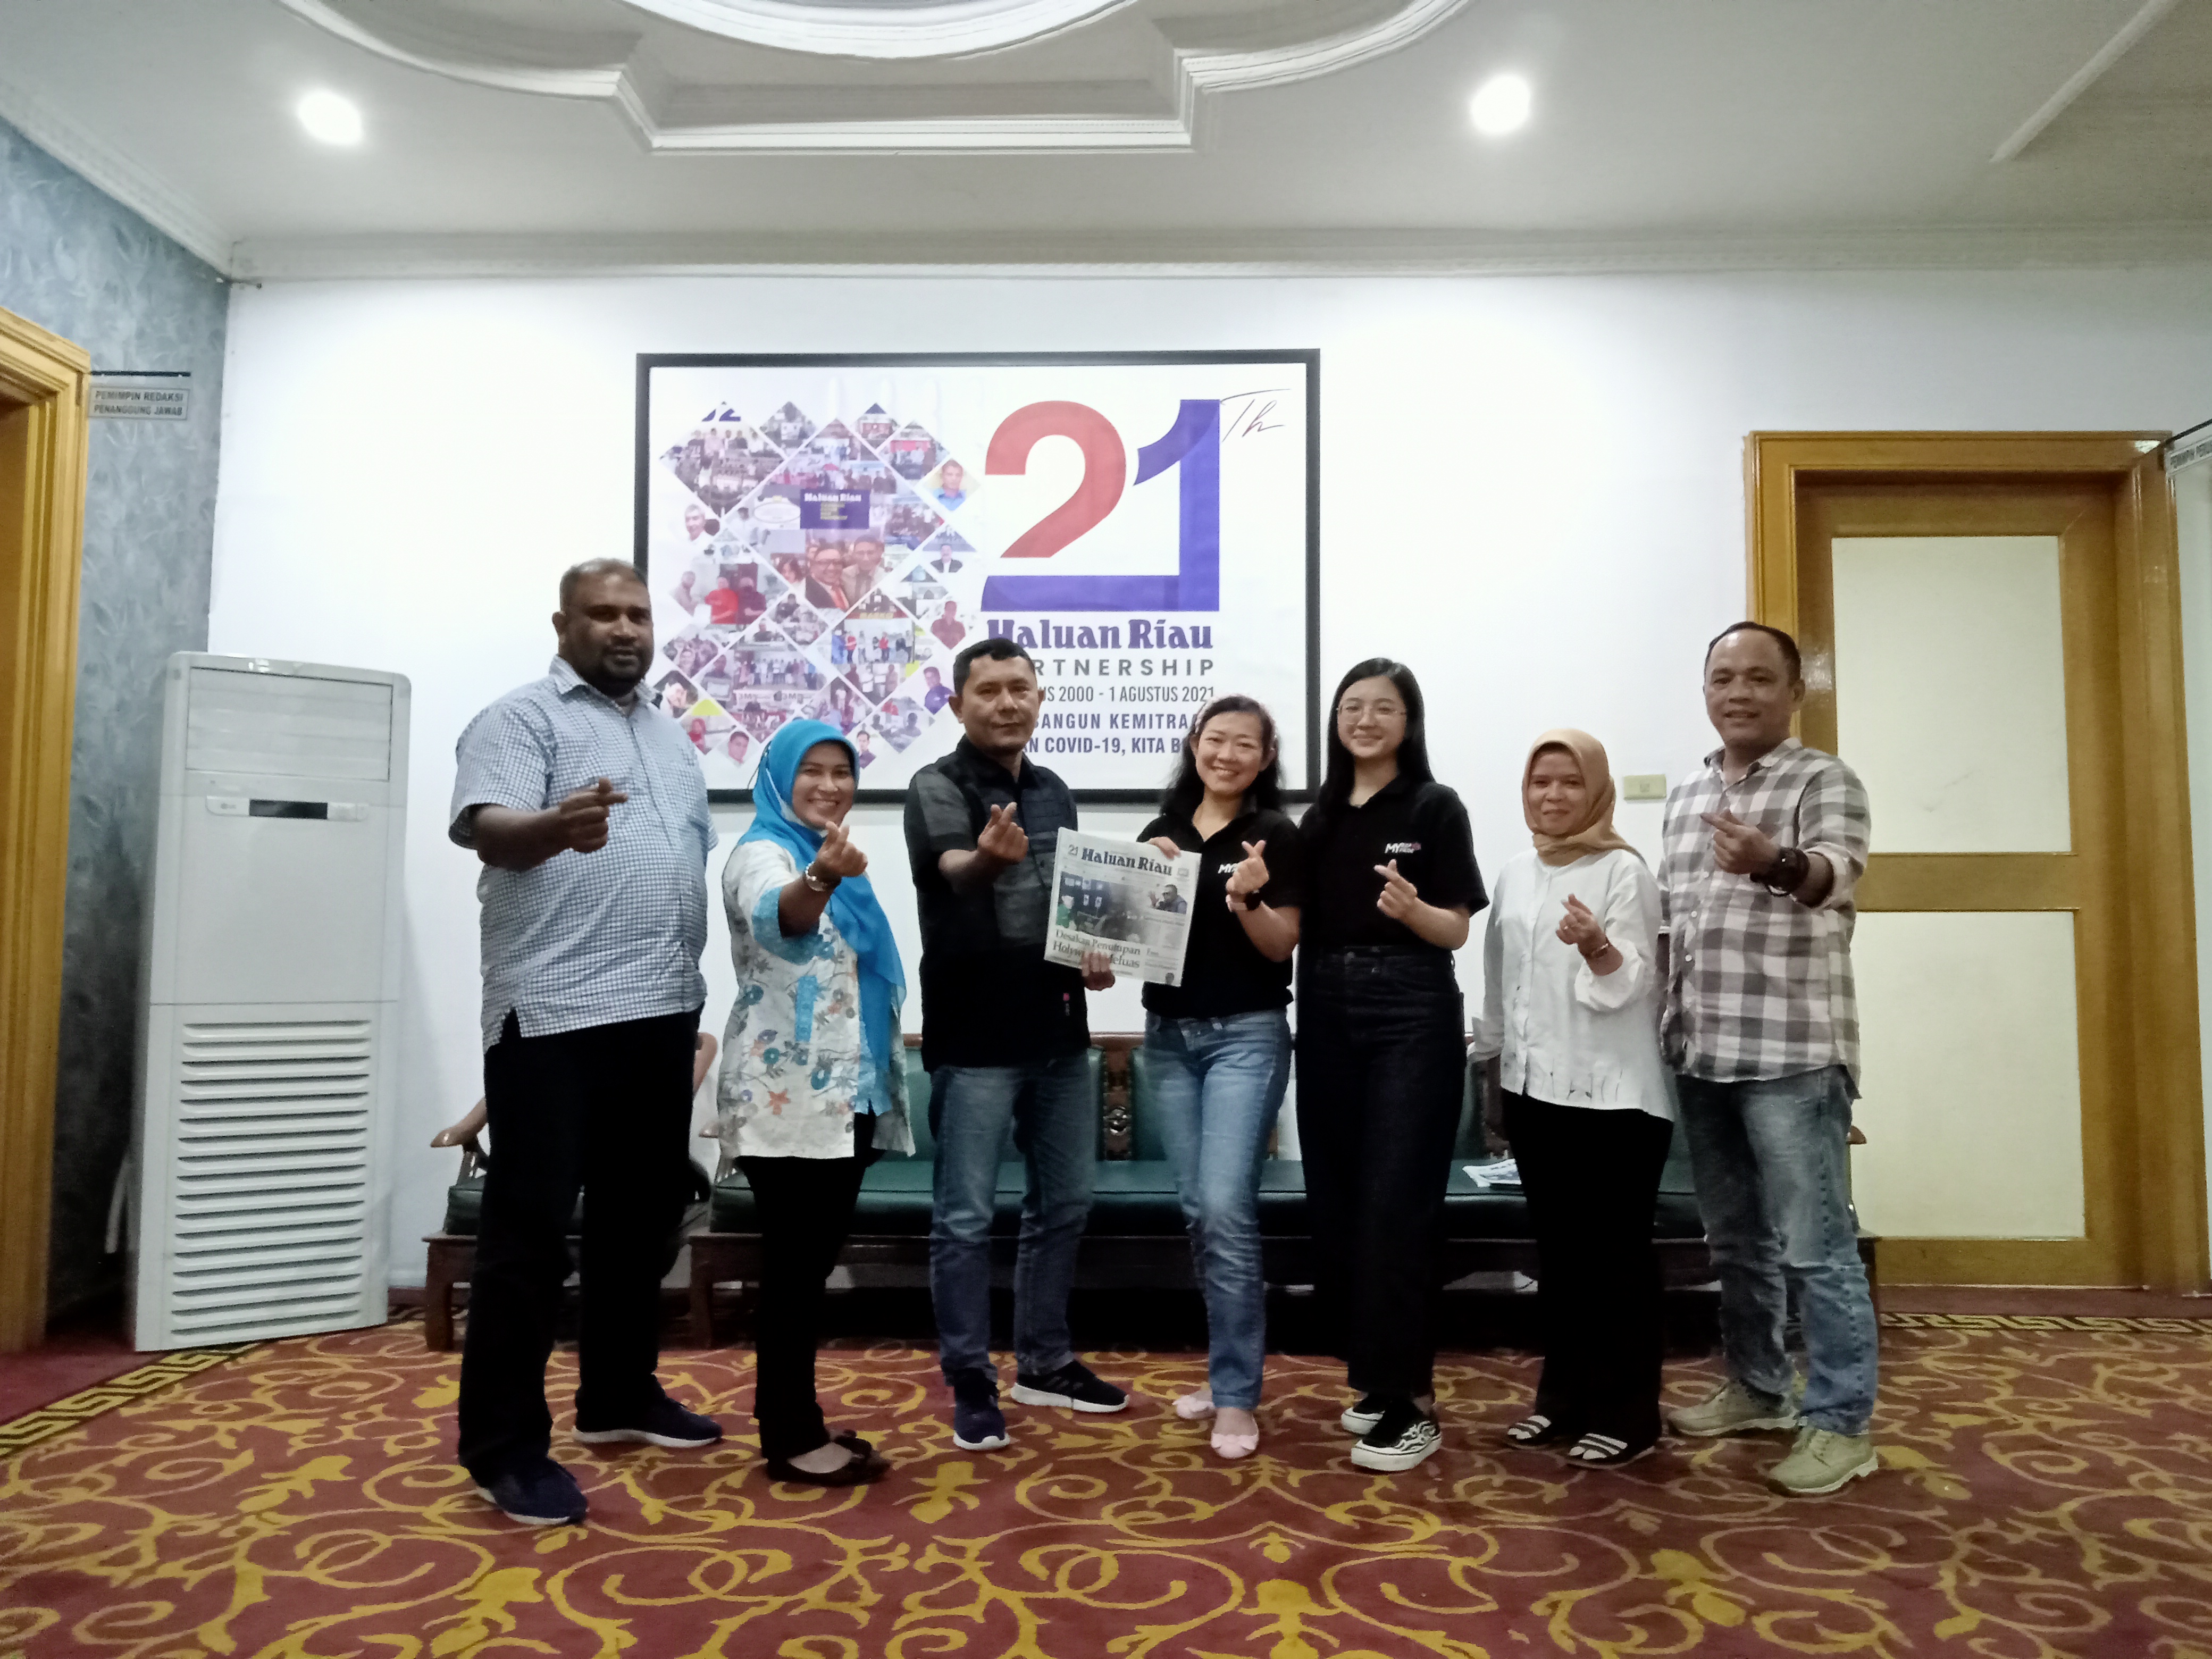 Berkunjung ke Haluan Riau, MyRepublic Hadir Sebagai Solusi Layanan Internet di Pekanbaru